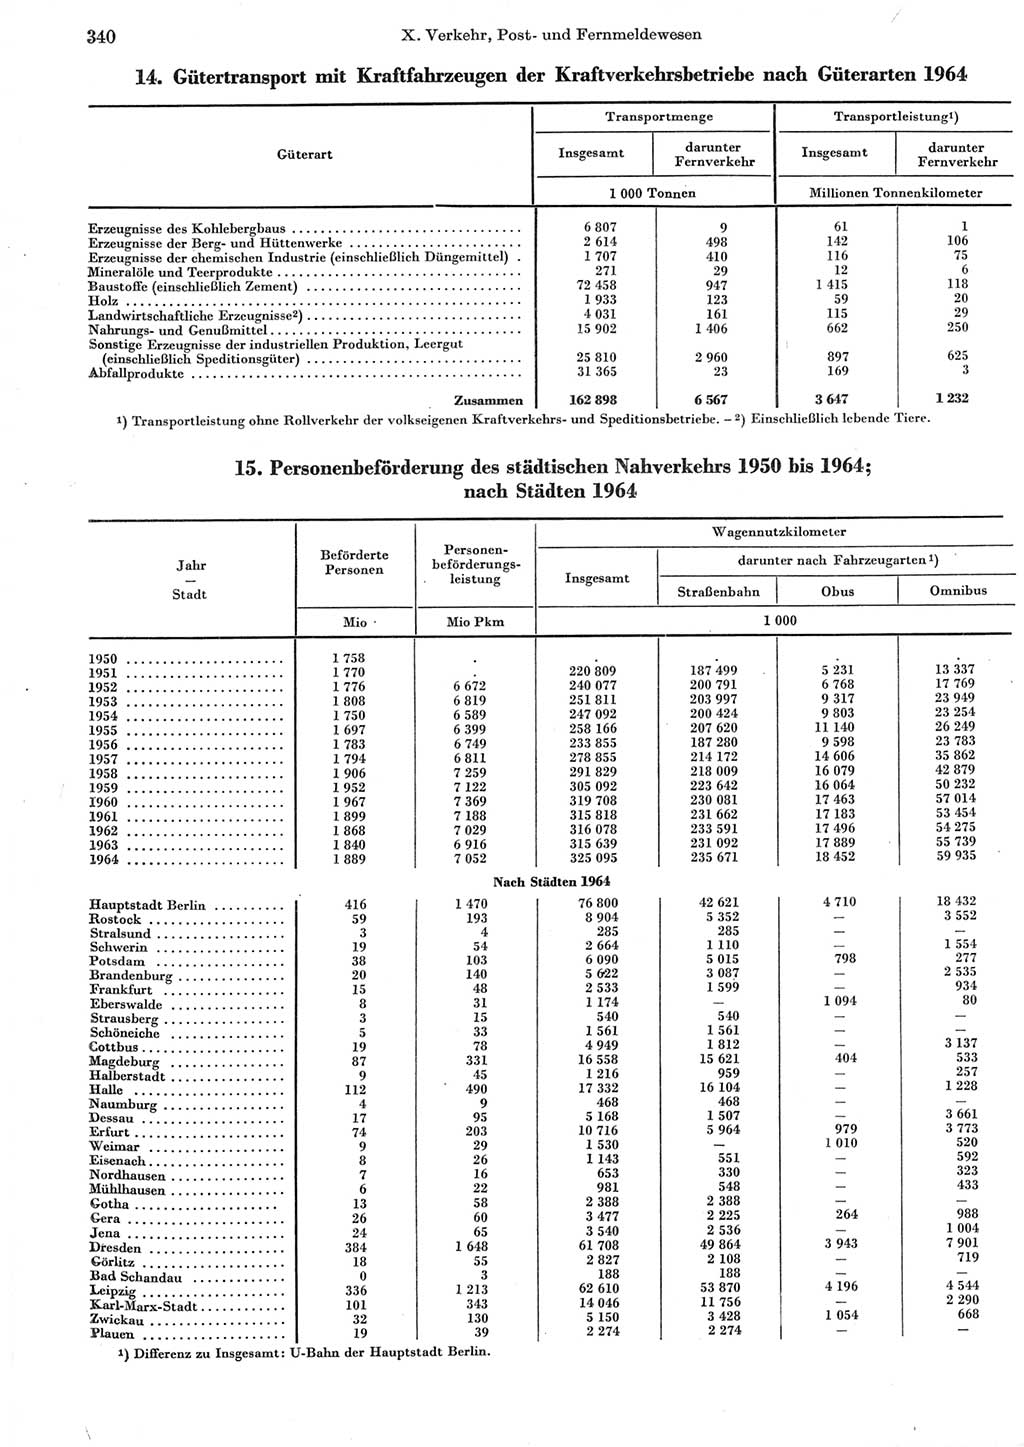 Statistisches Jahrbuch der Deutschen Demokratischen Republik (DDR) 1965, Seite 340 (Stat. Jb. DDR 1965, S. 340)